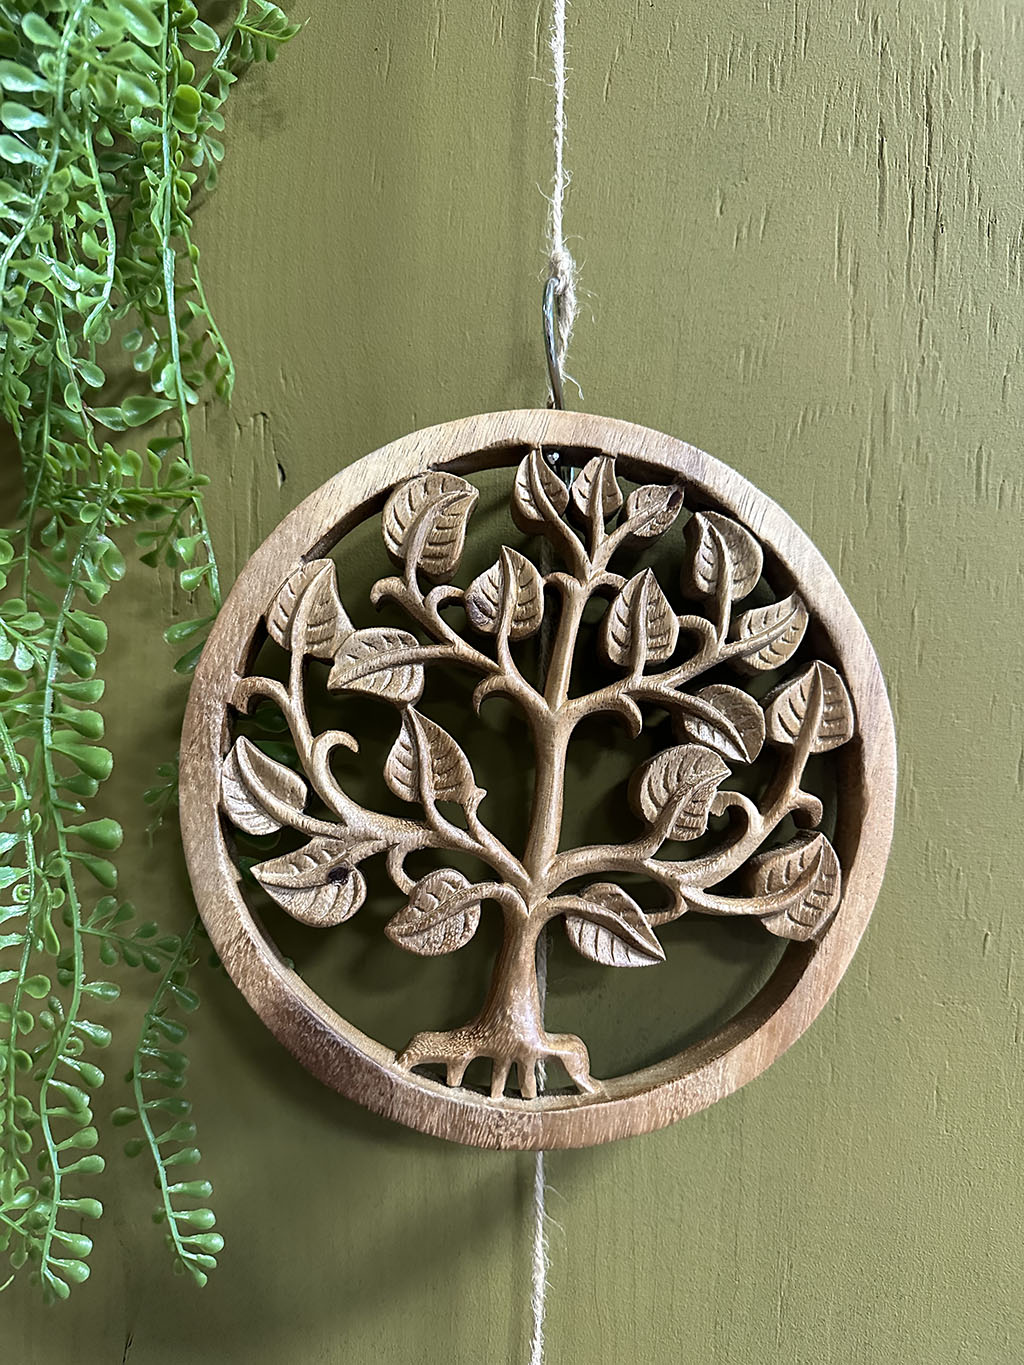 Deze tot in detail uitgesneden houten levensboom is een pronkstuk aan uw muur. Prachtig uit één stuk hout gesneden!